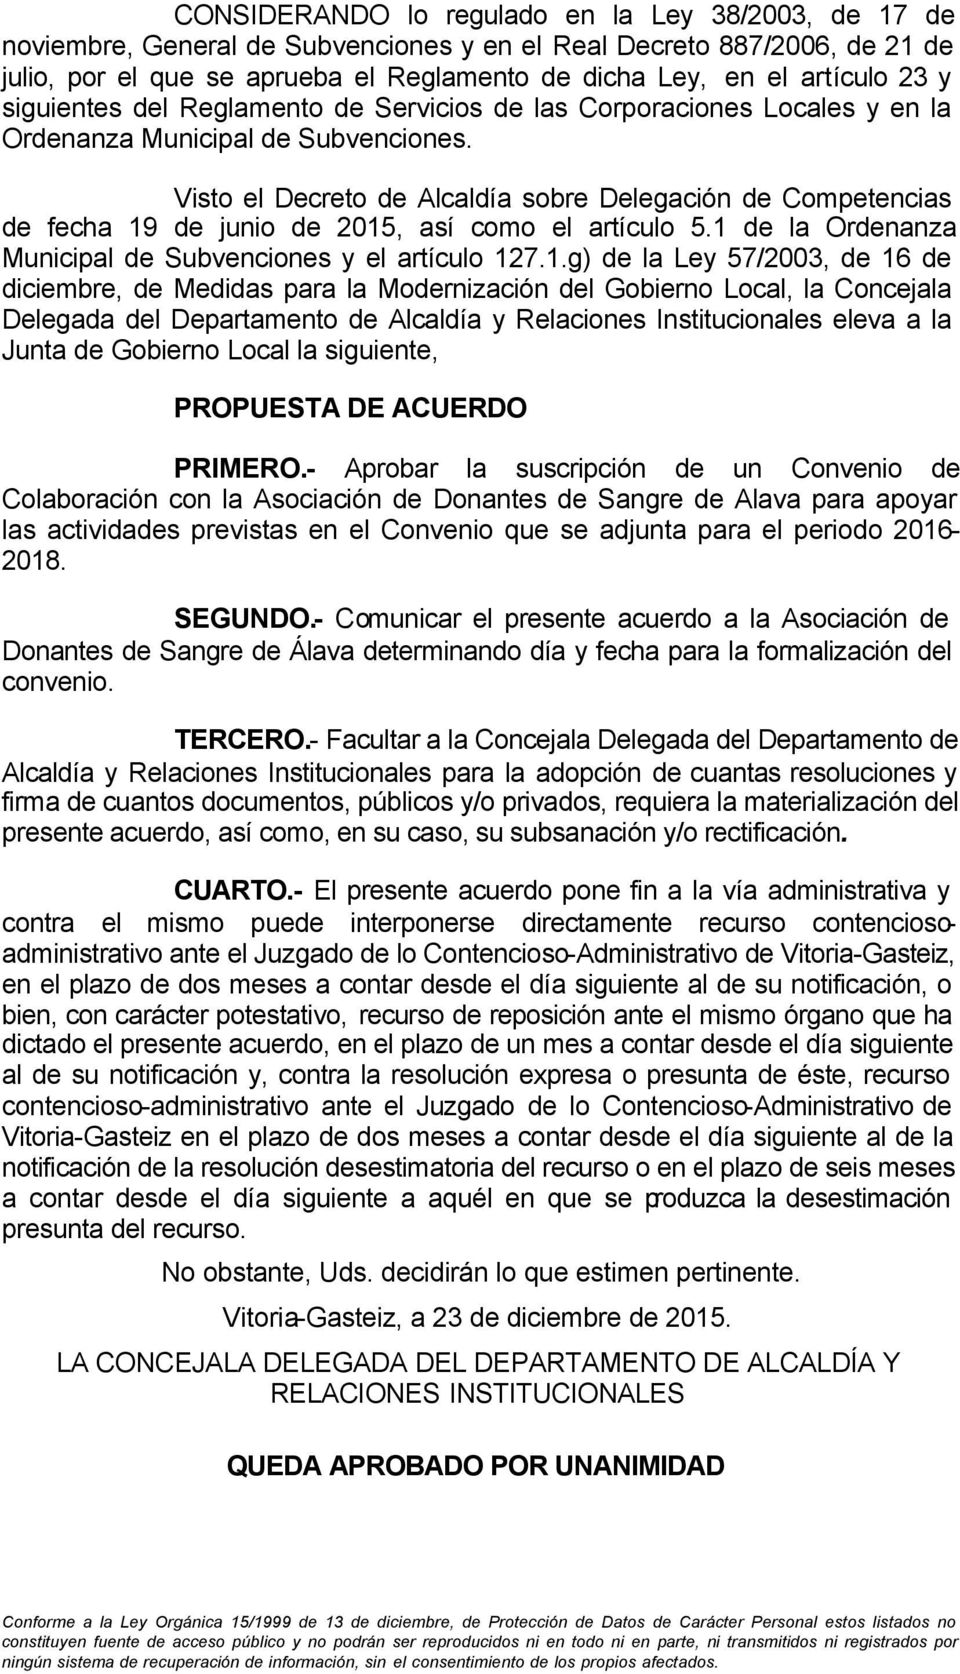 Visto el Decreto de Alcaldía sobre Delegación de Competencias de fecha 19